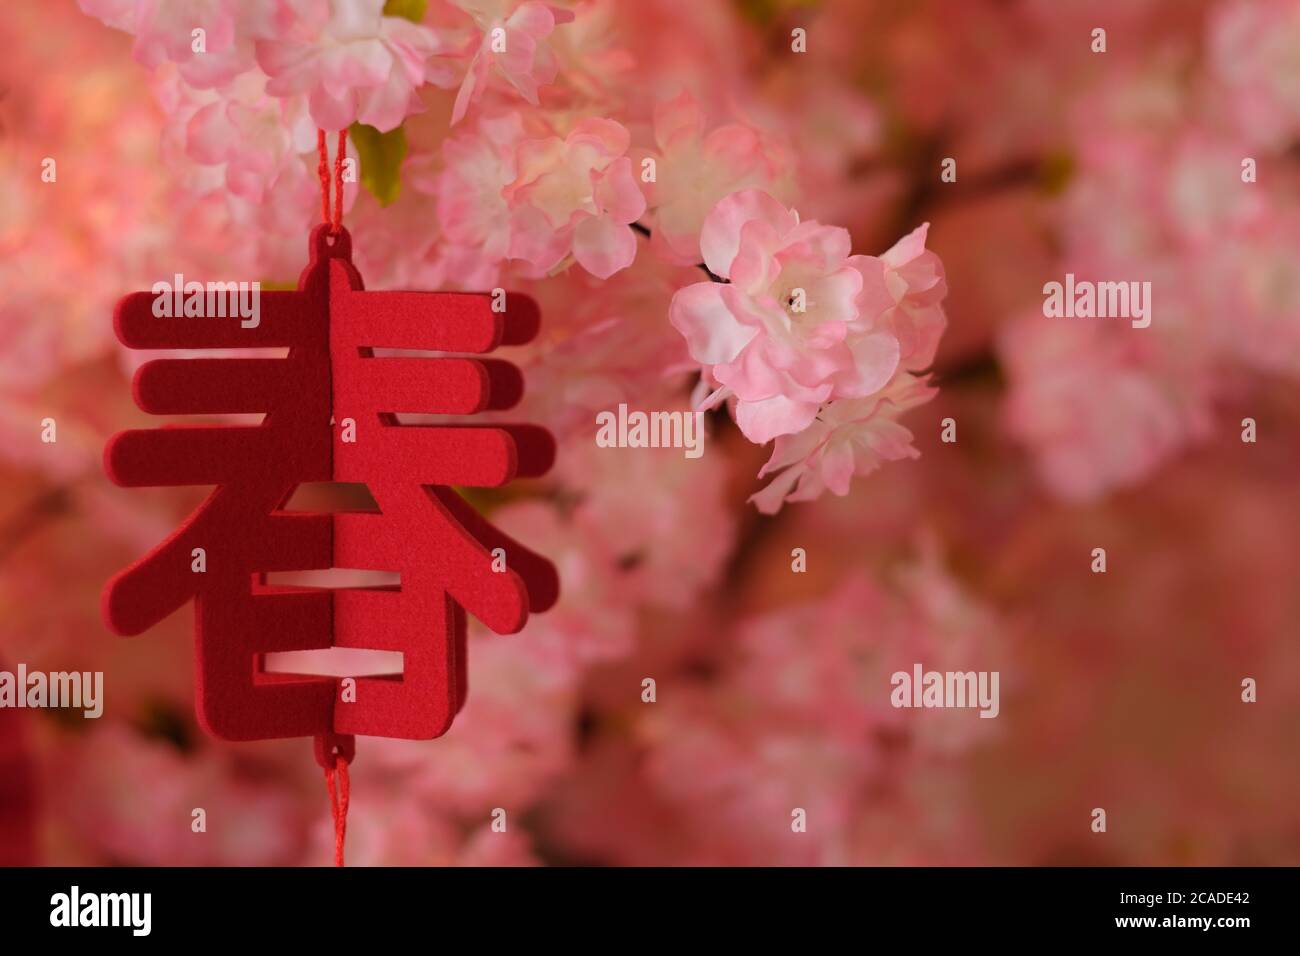 Nahaufnahme Chinesisches Wort Frühling als Ornament, das am Baum hängt. Blur rosa Blumen Hintergrund. Frühlingsfest Konzept Stockfoto